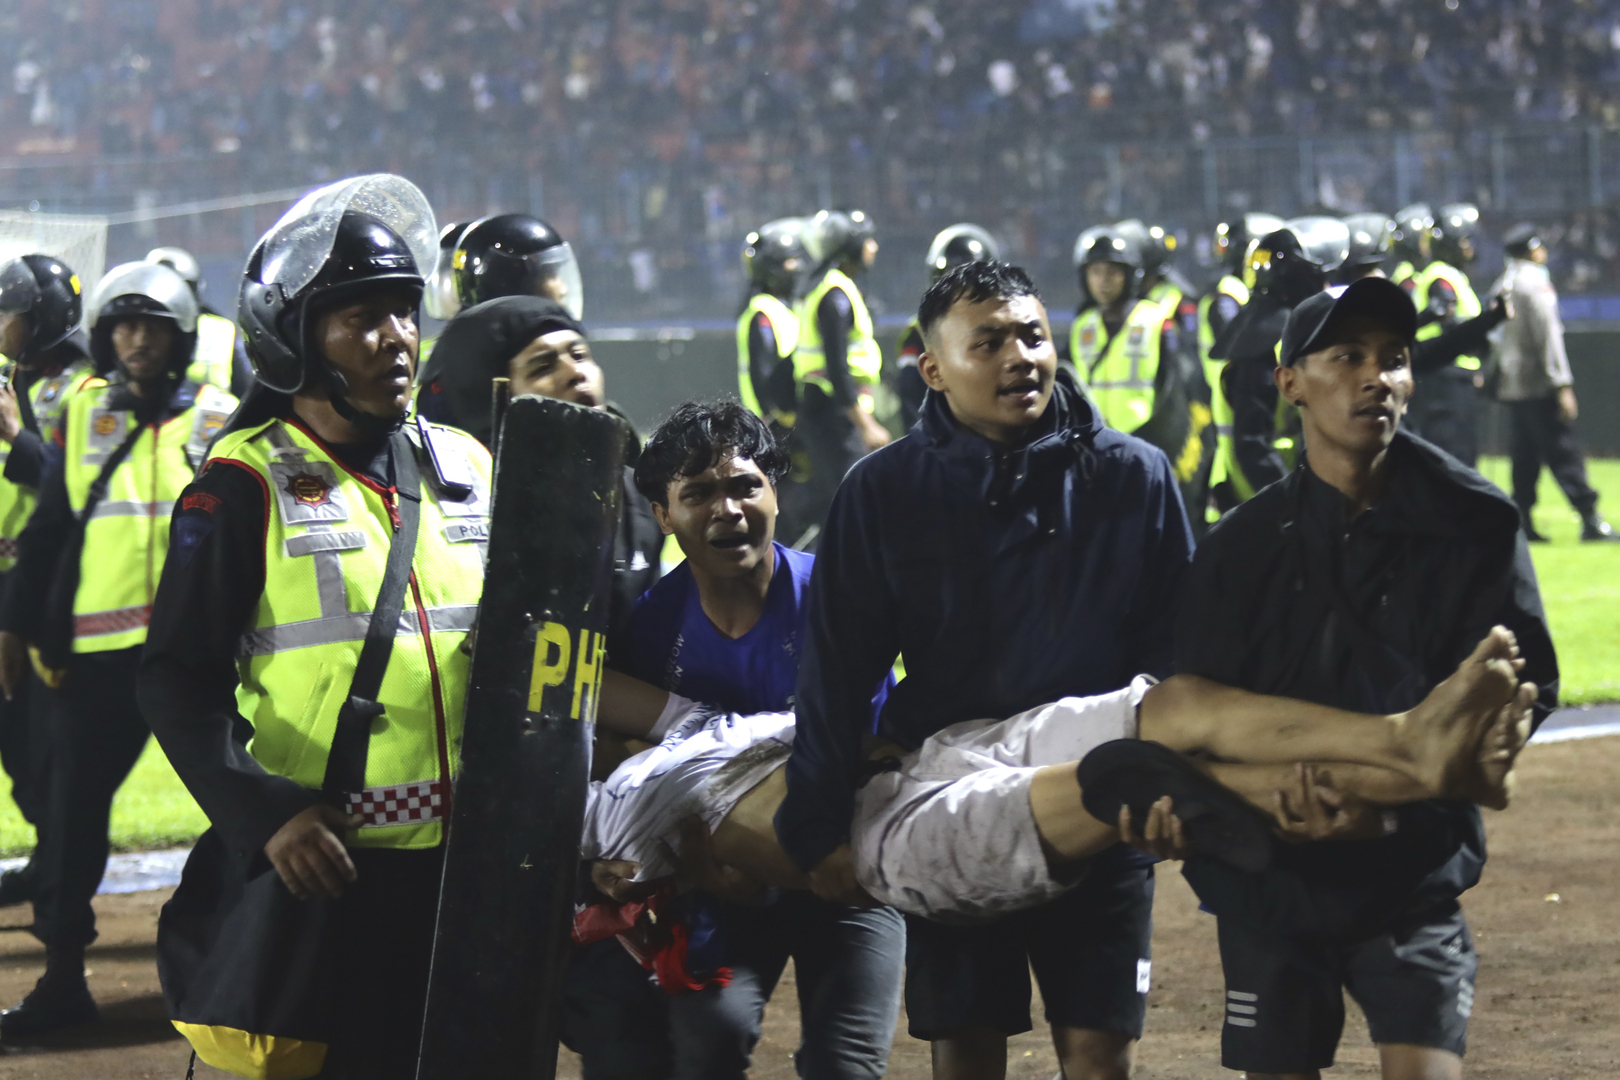 مشاهد جديدة من كارثة ملعب إندونيسيا.. ورئيس البلاد يصدر أمرا عاجلا (فيديو+ صور)